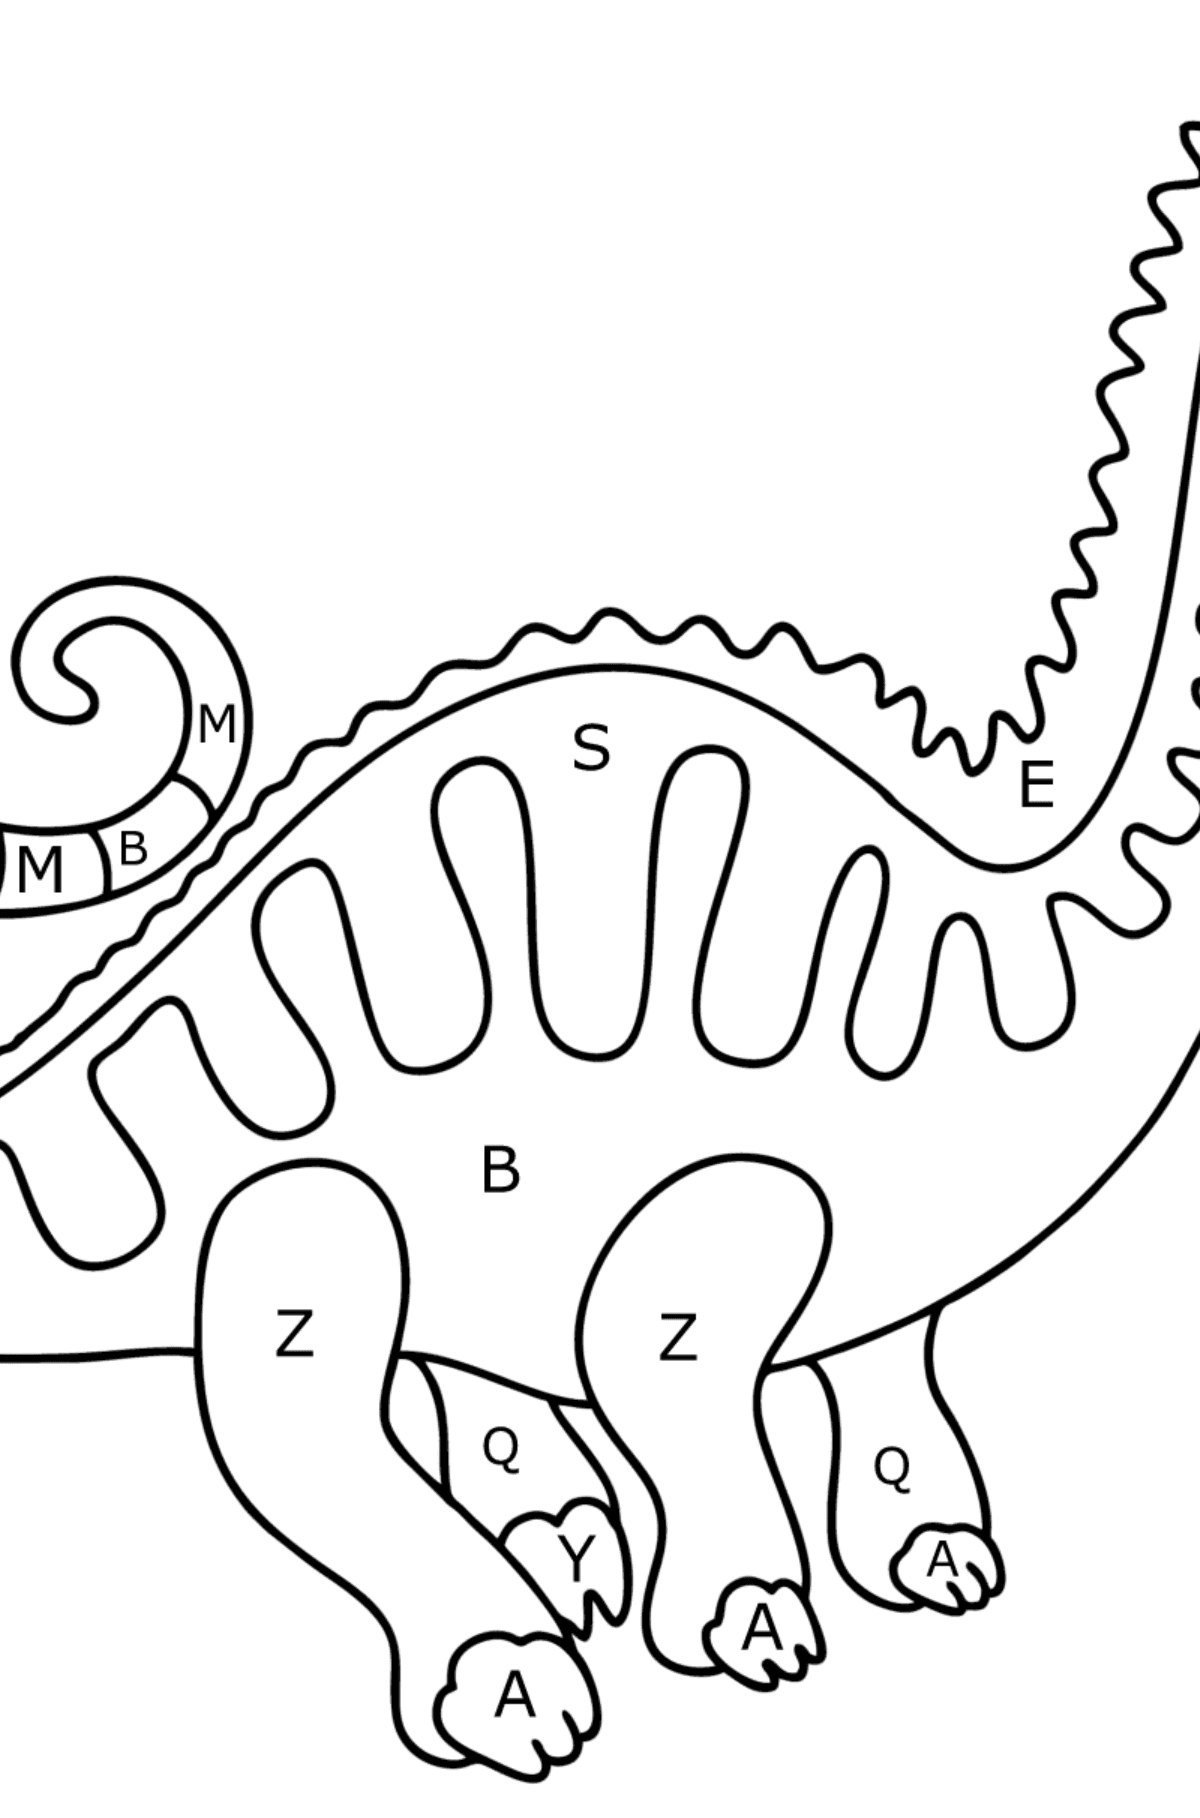 Coloriage Apatosaure - Coloriage par Lettres pour les Enfants